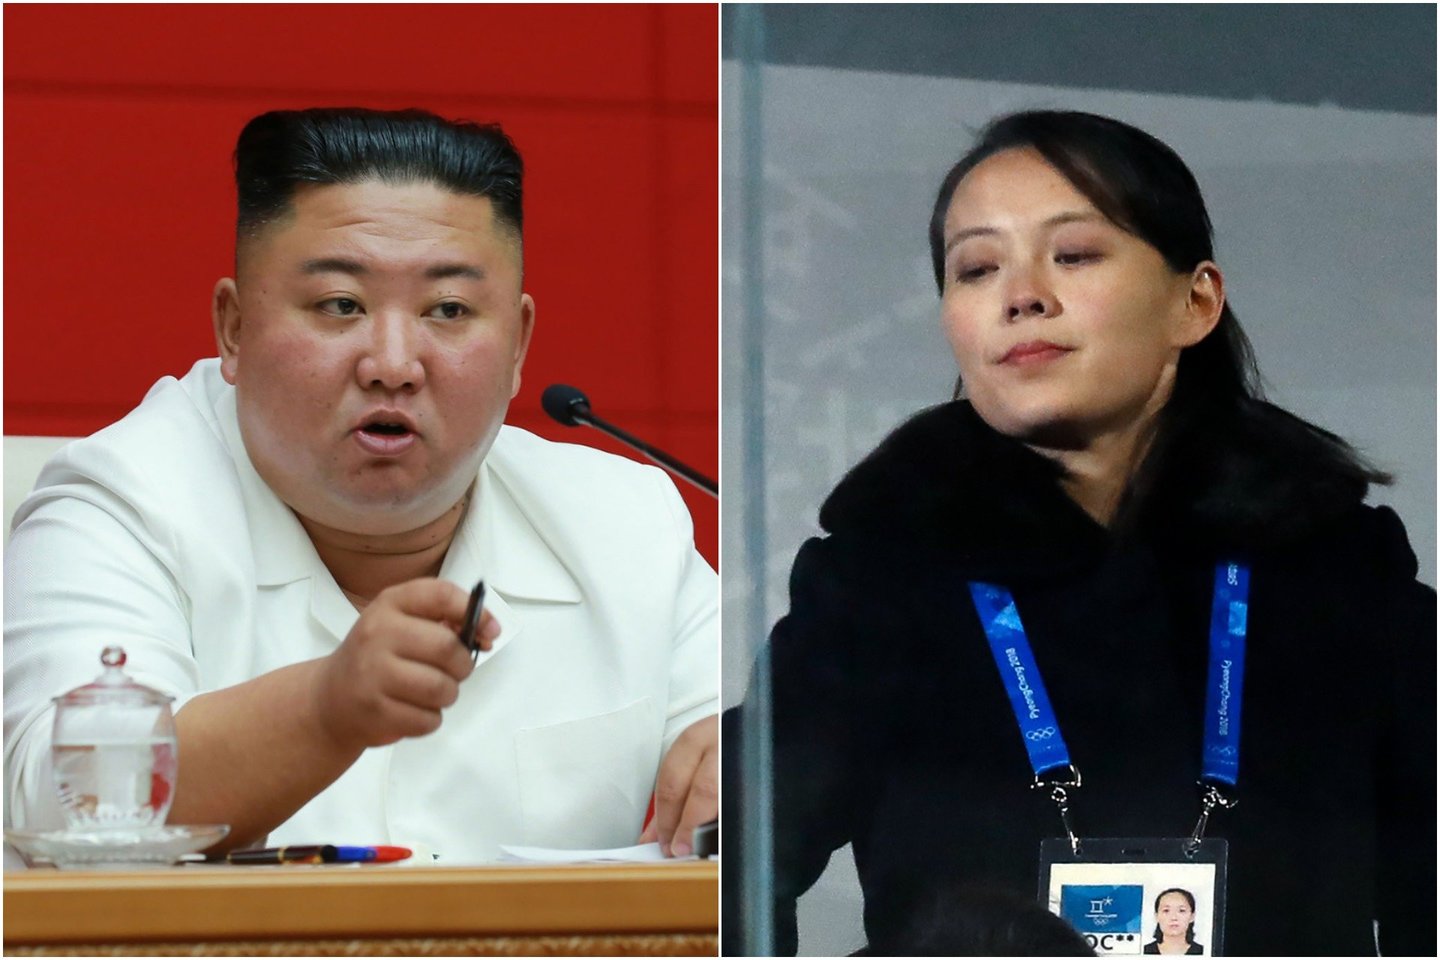  Teigiama, kad K.Jong-Unui panirus į komą Šiaurės Korėjos valdymą laikinai perima jo sesuo.<br> lrytas.lt koliažas.